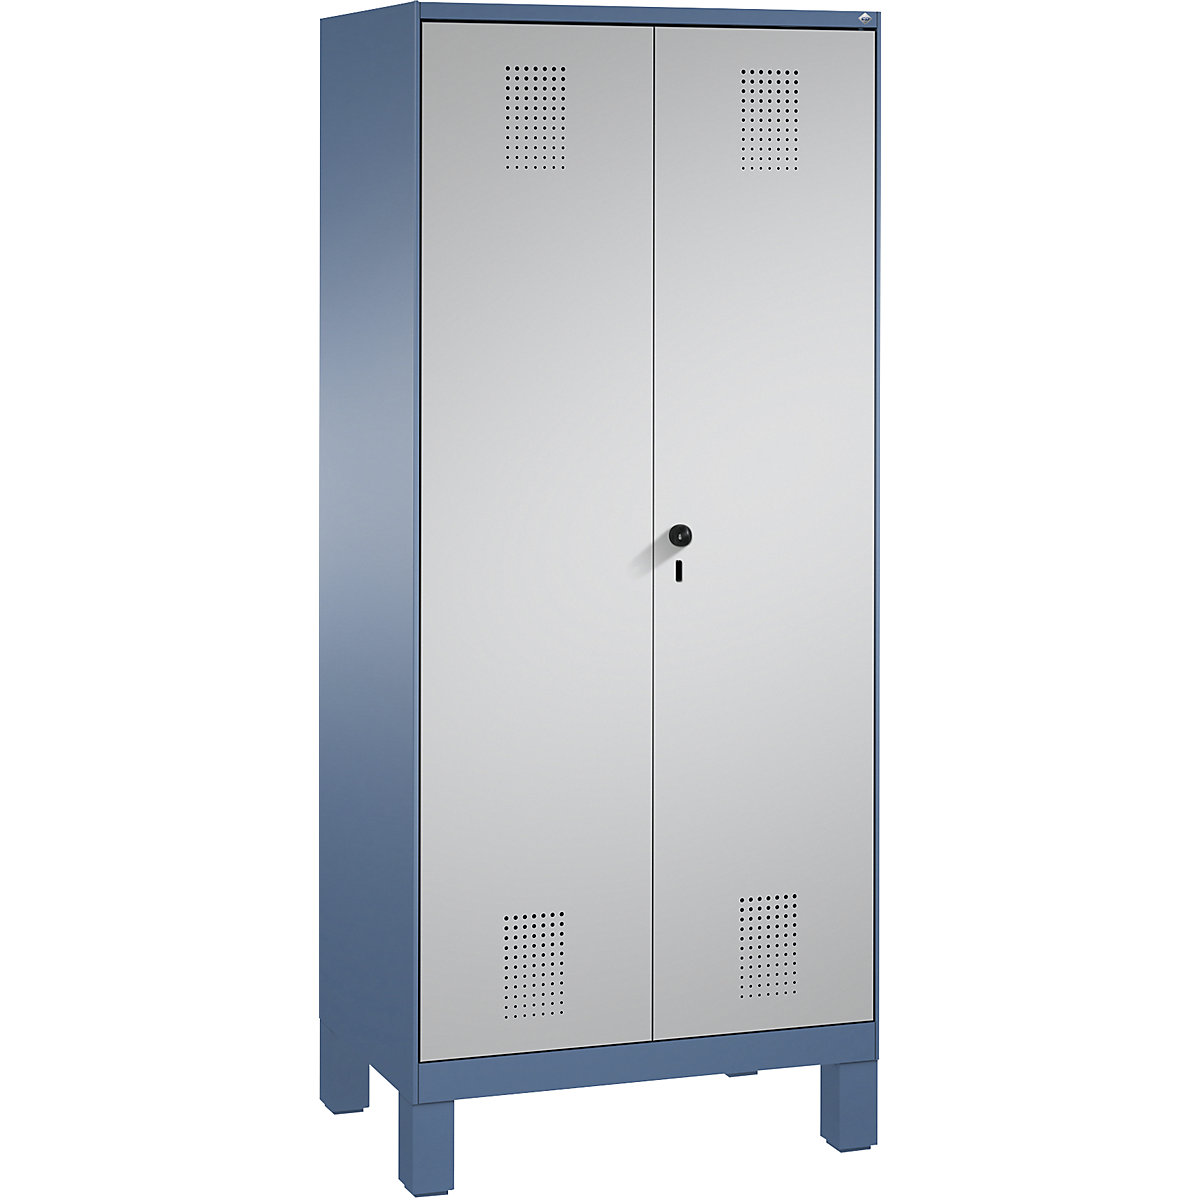 Szafa do przechowywania EVOLO, drzwi zamykane do siebie, z nogami – C+P, 2 przedziały, 8 półek, szer. przedziału 400 mm, niebiesko-mglista / biały aluminium-11